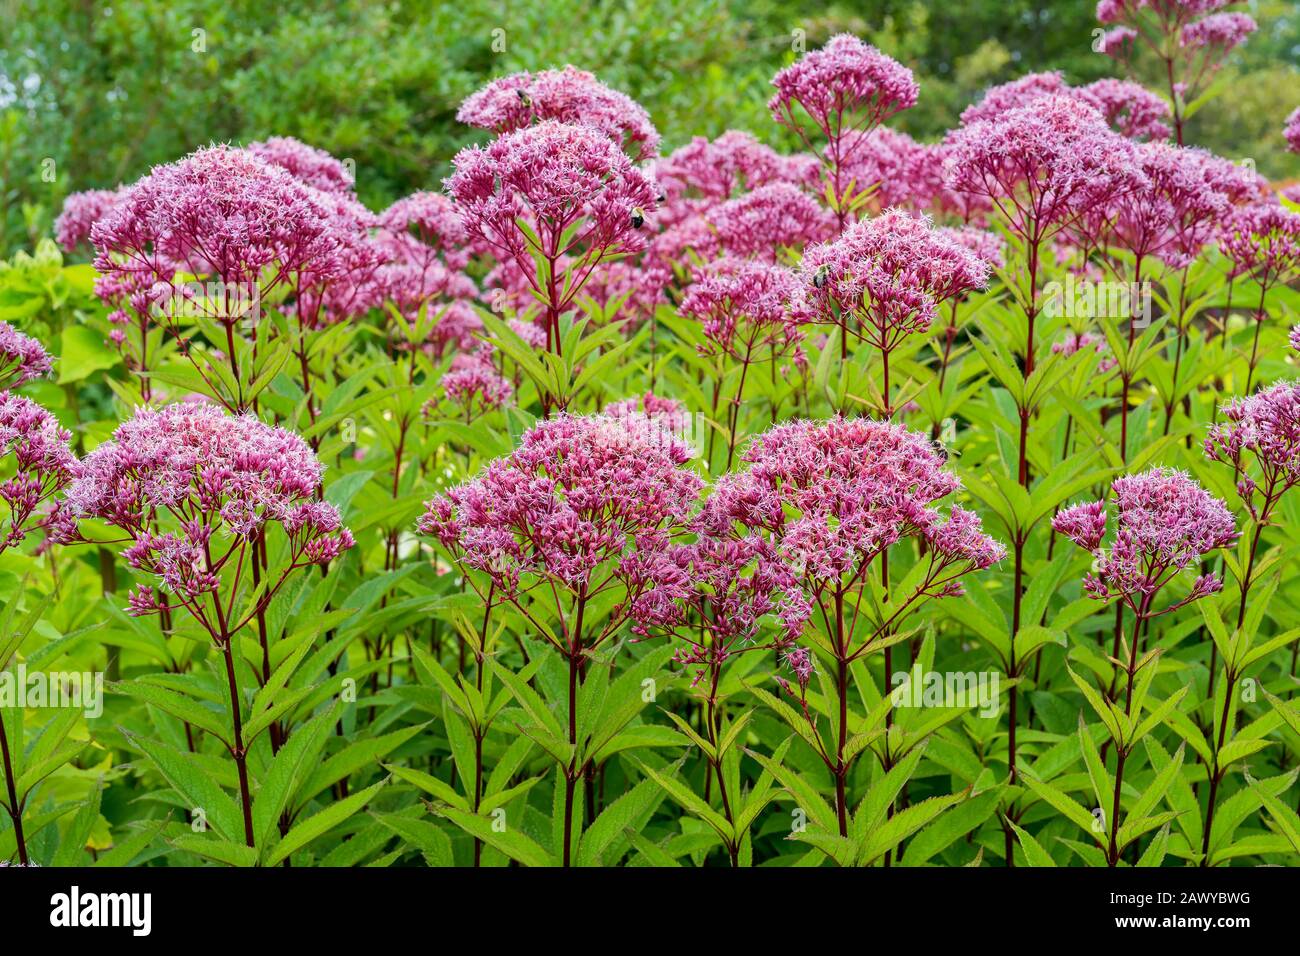 Joe Pye Weed a herbaceous wildflower growing in rural North America Stock Photo